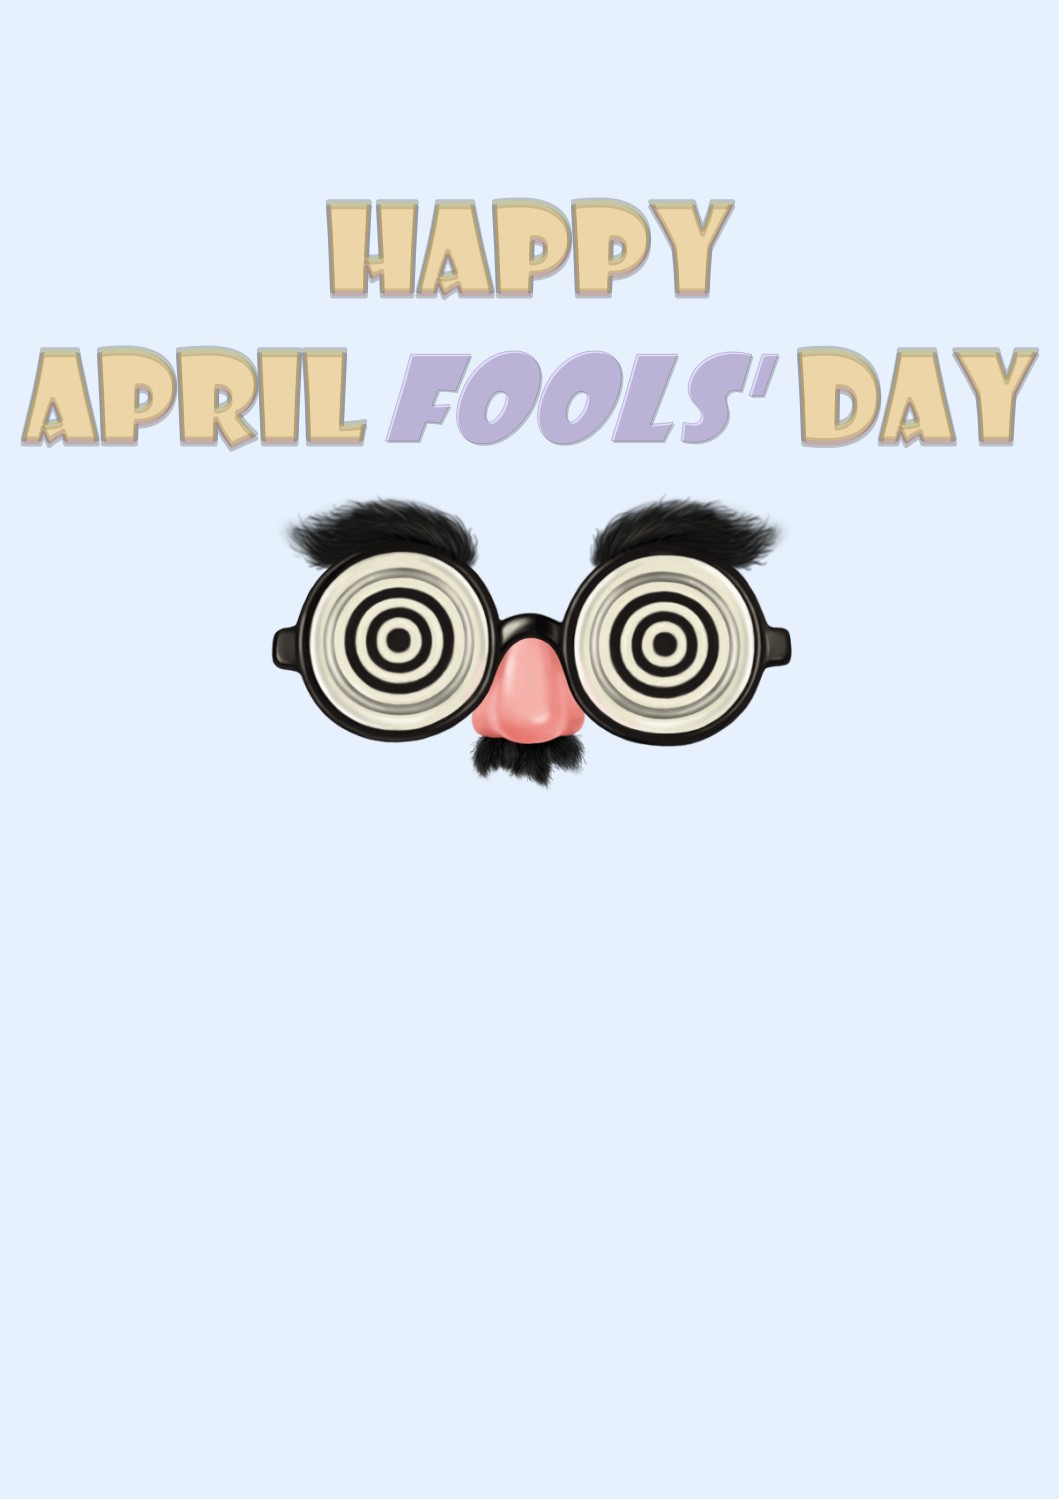 April Fools' Day Quotes